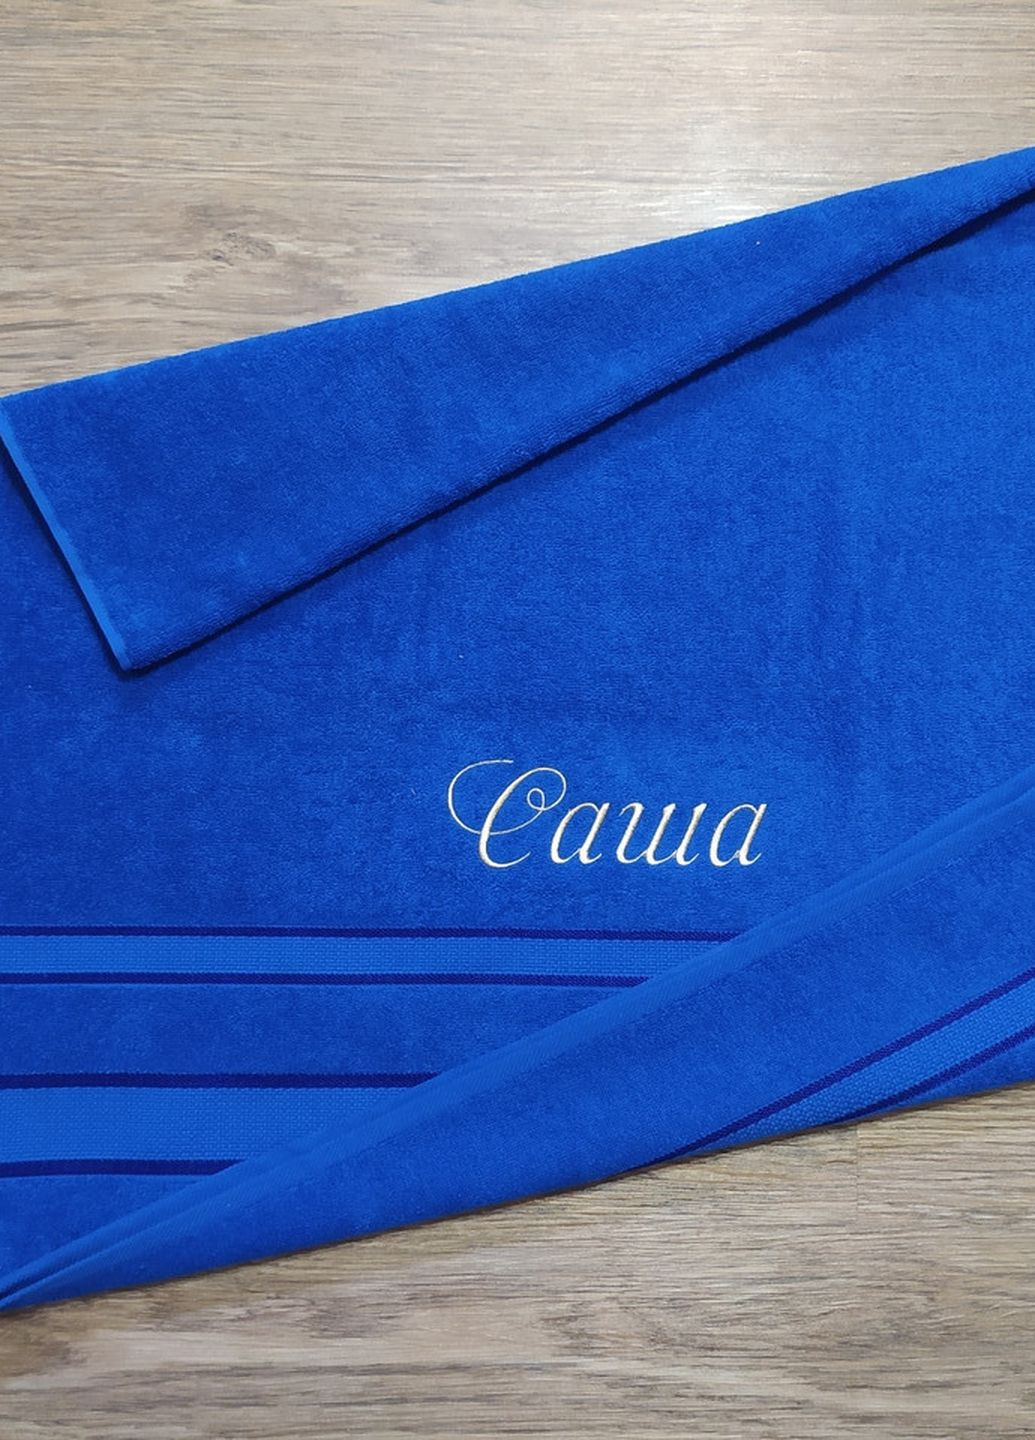 No Brand полотенце с именной вышивкой махровое банное 70*140 синий александр 04242 однотонный синий производство - Украина